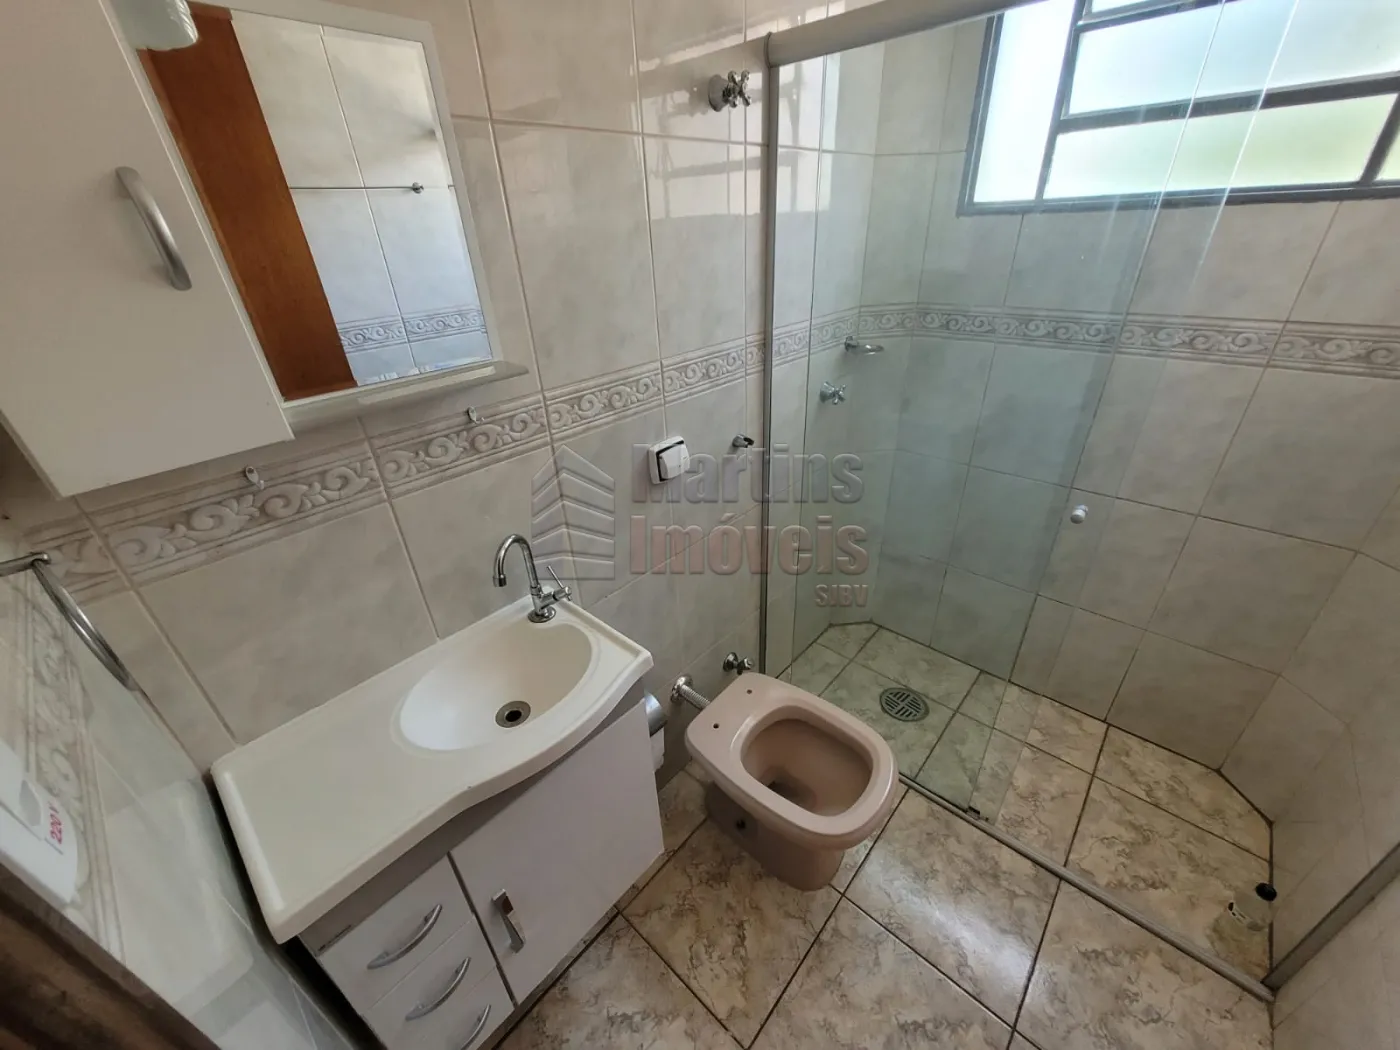 Alugar Apartamento / Padrão em São João da Boa Vista R$ 1.250,00 - Foto 8